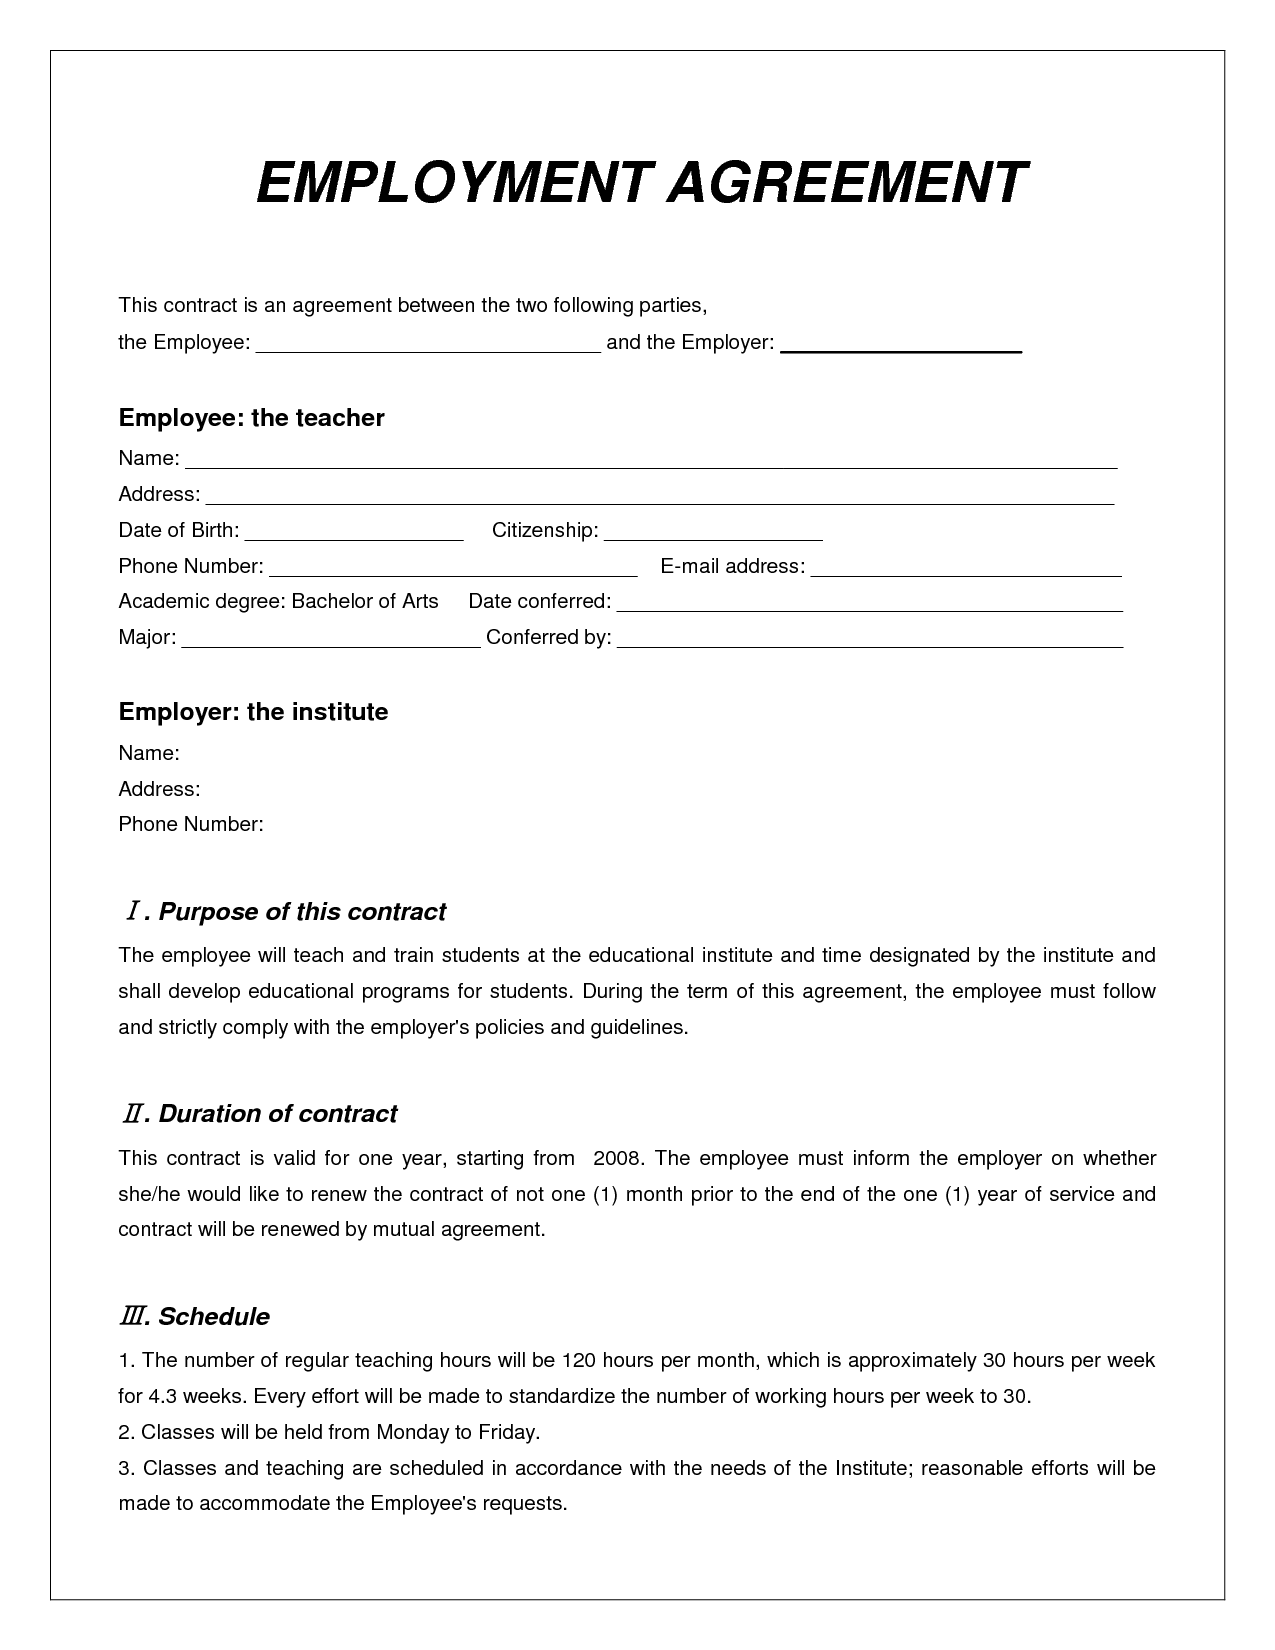 employment agreement contract   Teacheng.us